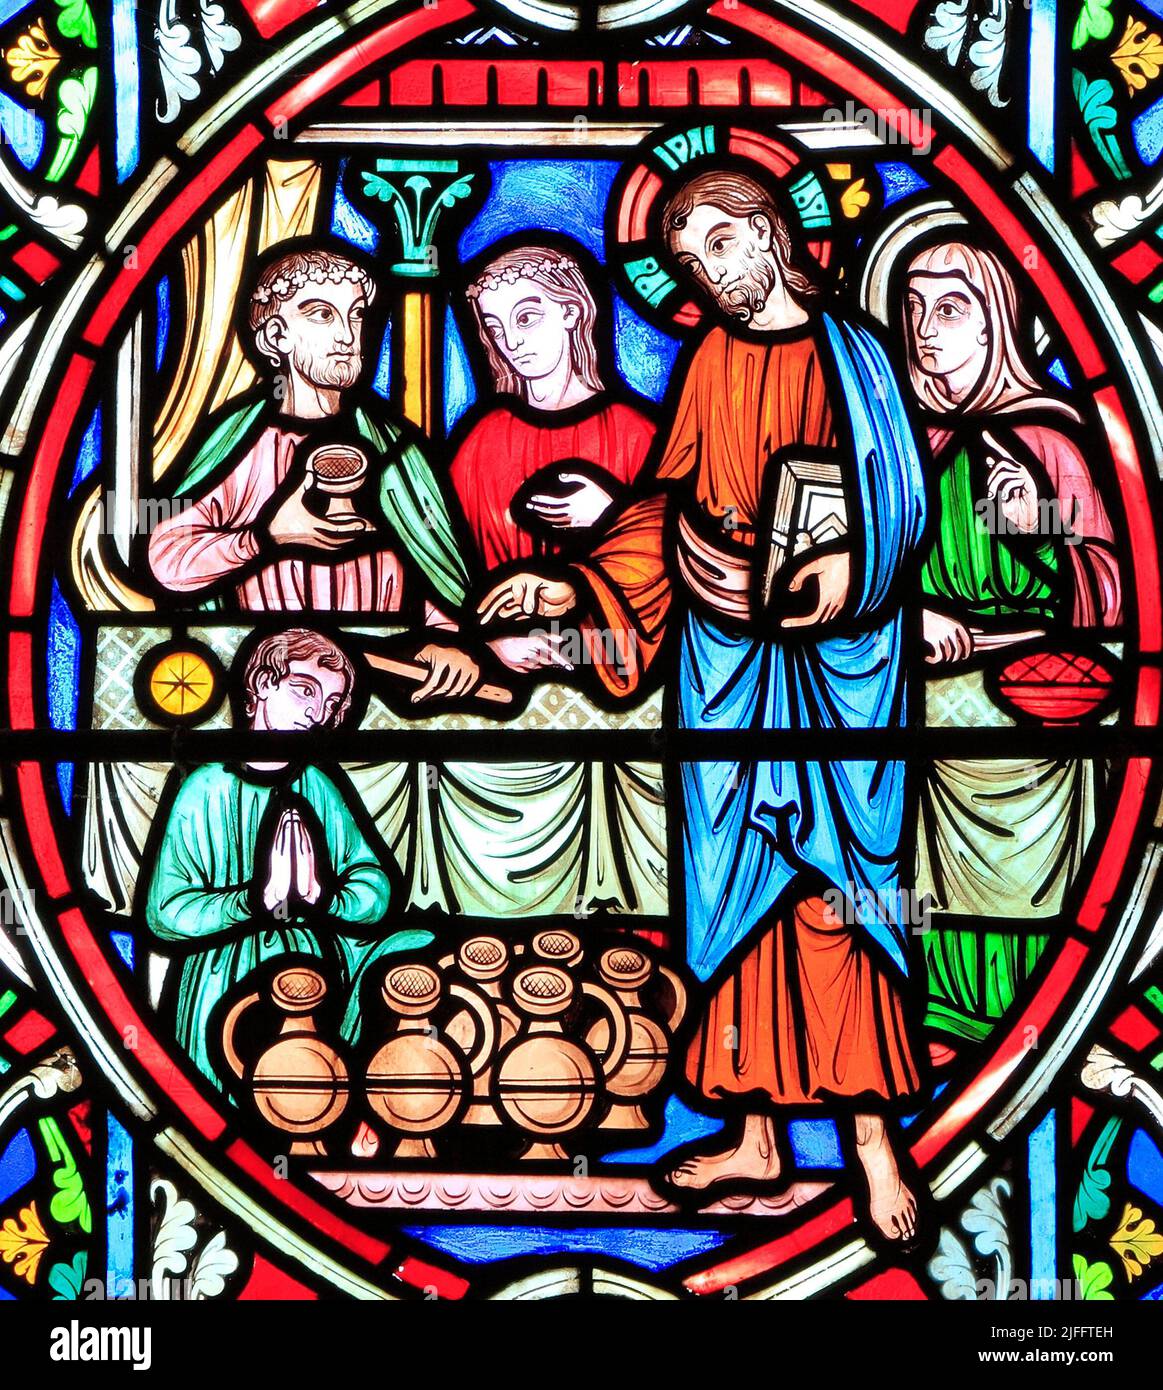 Scène de la vie de Jésus, par Adolph Didron, Paris, 1860, vitrail, Feltwell, Norfolk. Jésus à Cana Wedding Feast, transforme l'eau en vin Banque D'Images